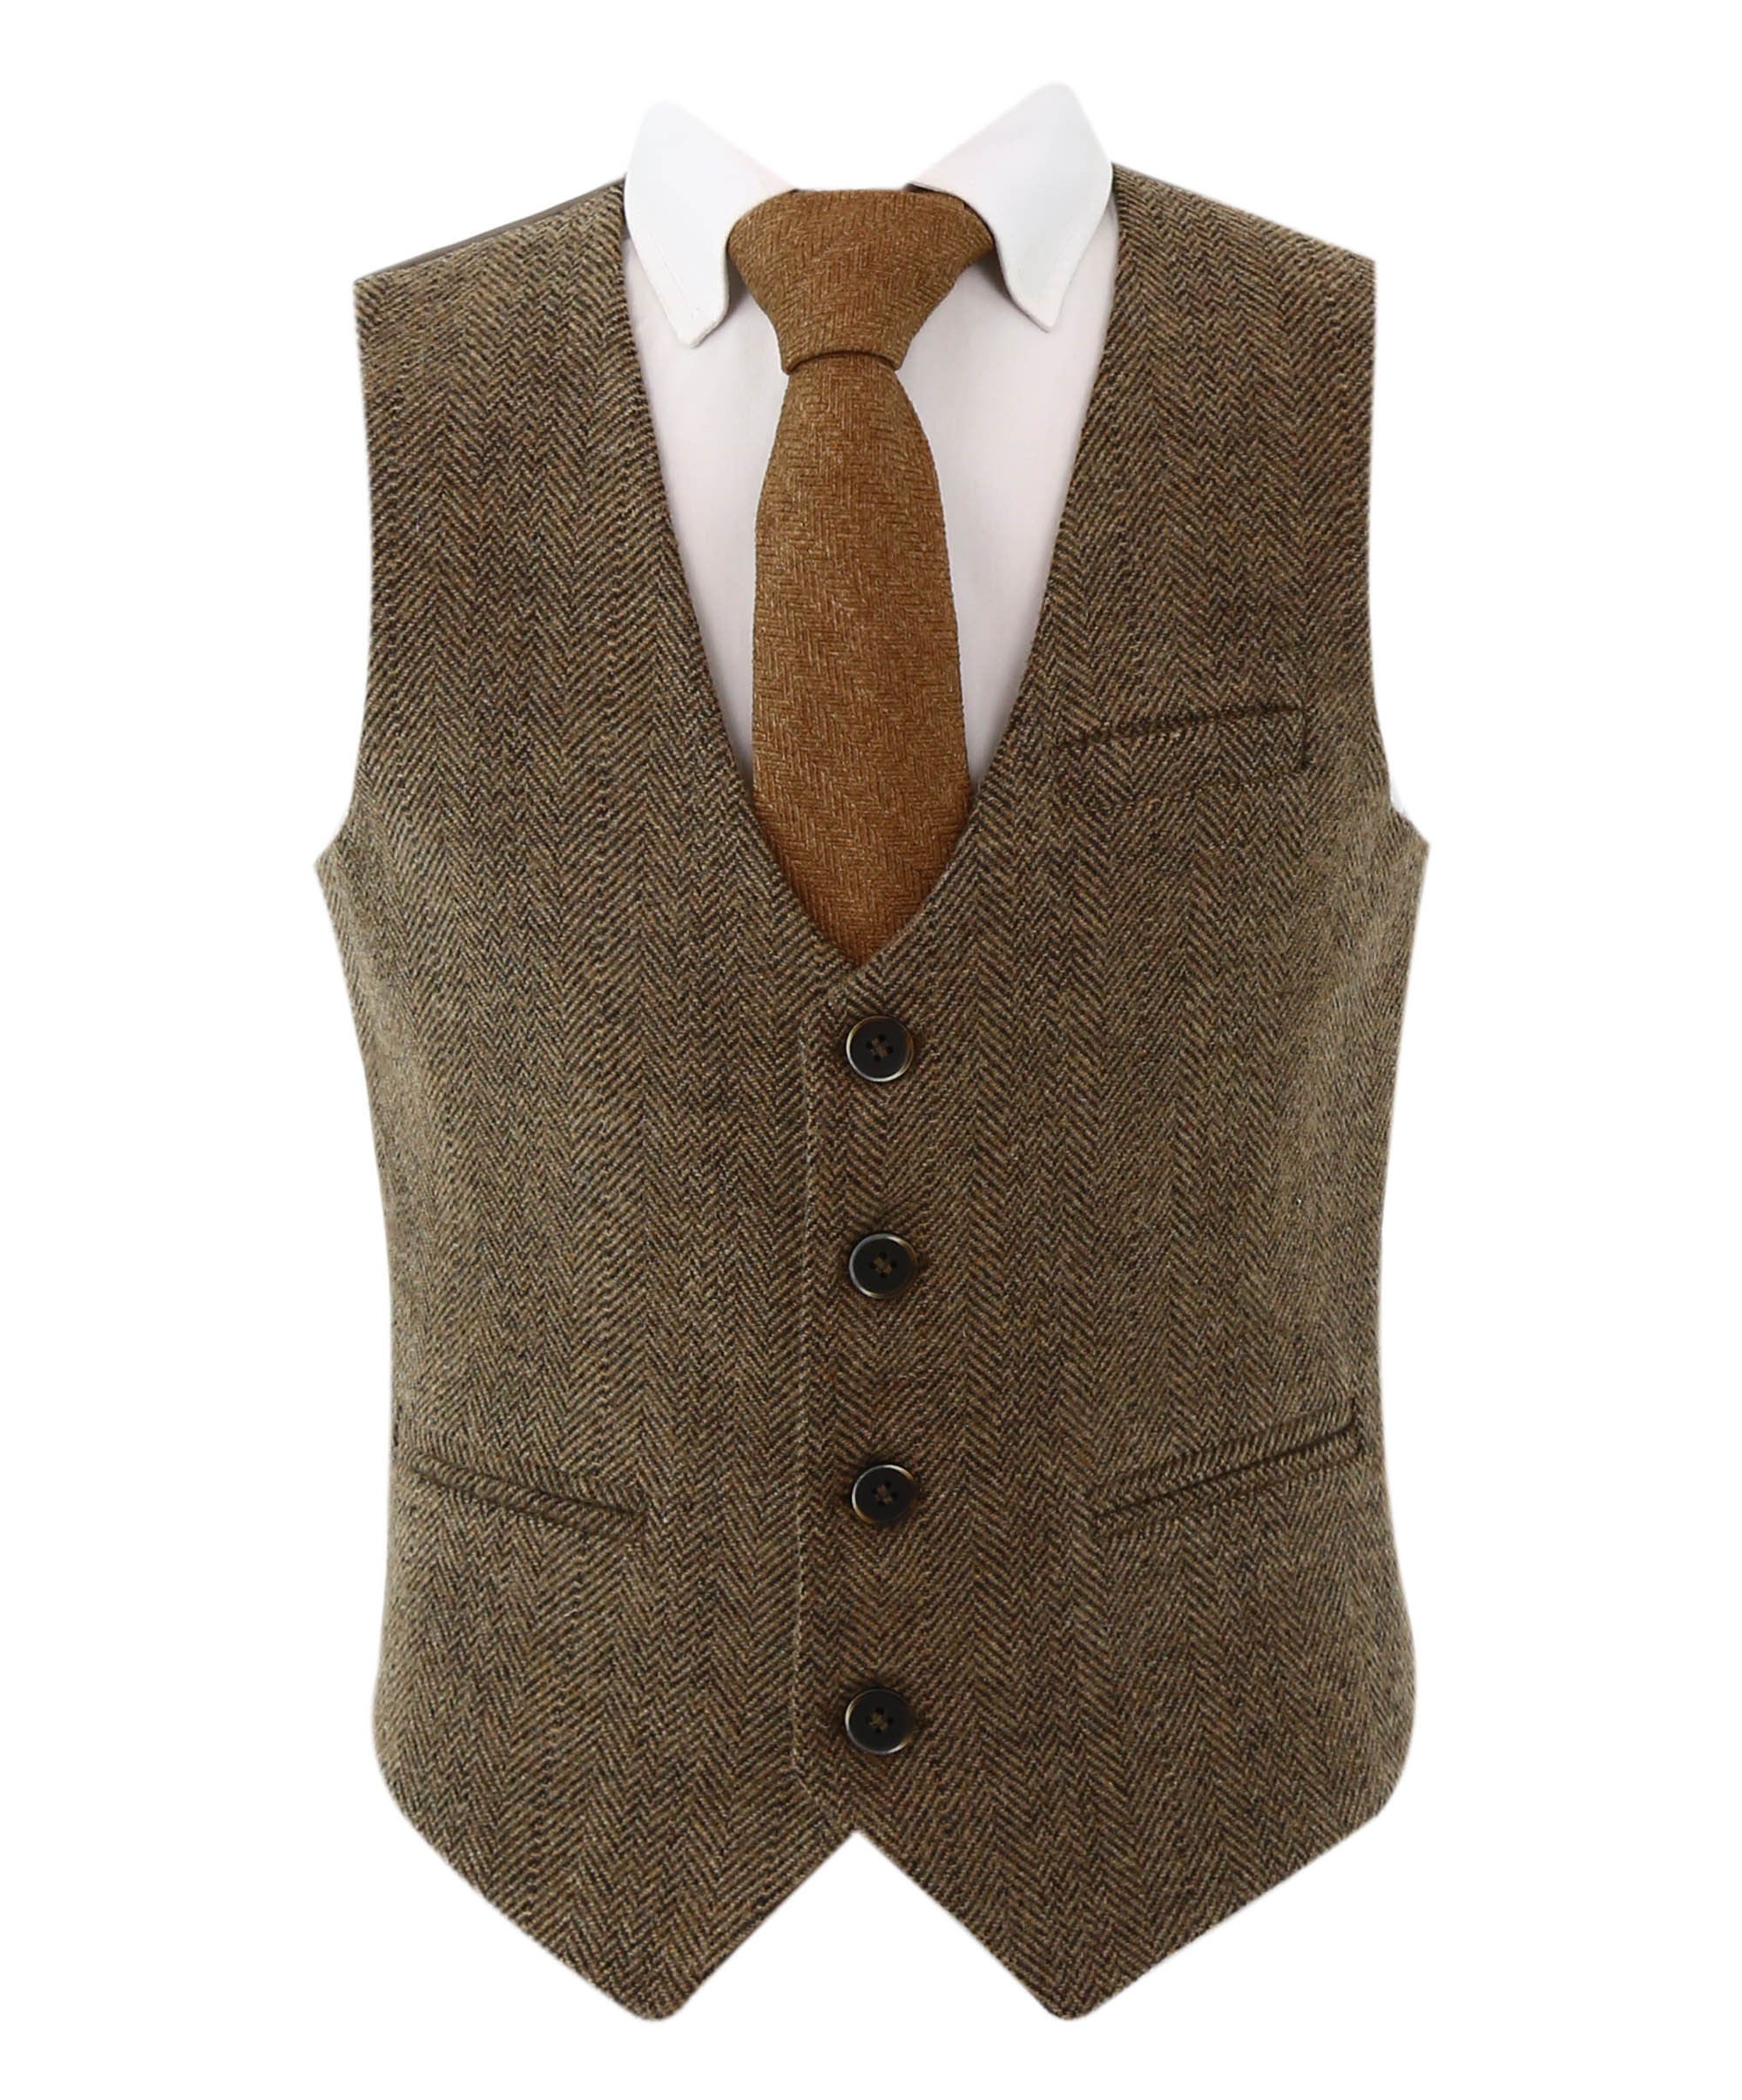 Boys Herringbone Tweed 2 PC Waistcoat Suit, Formal Set for Special ...